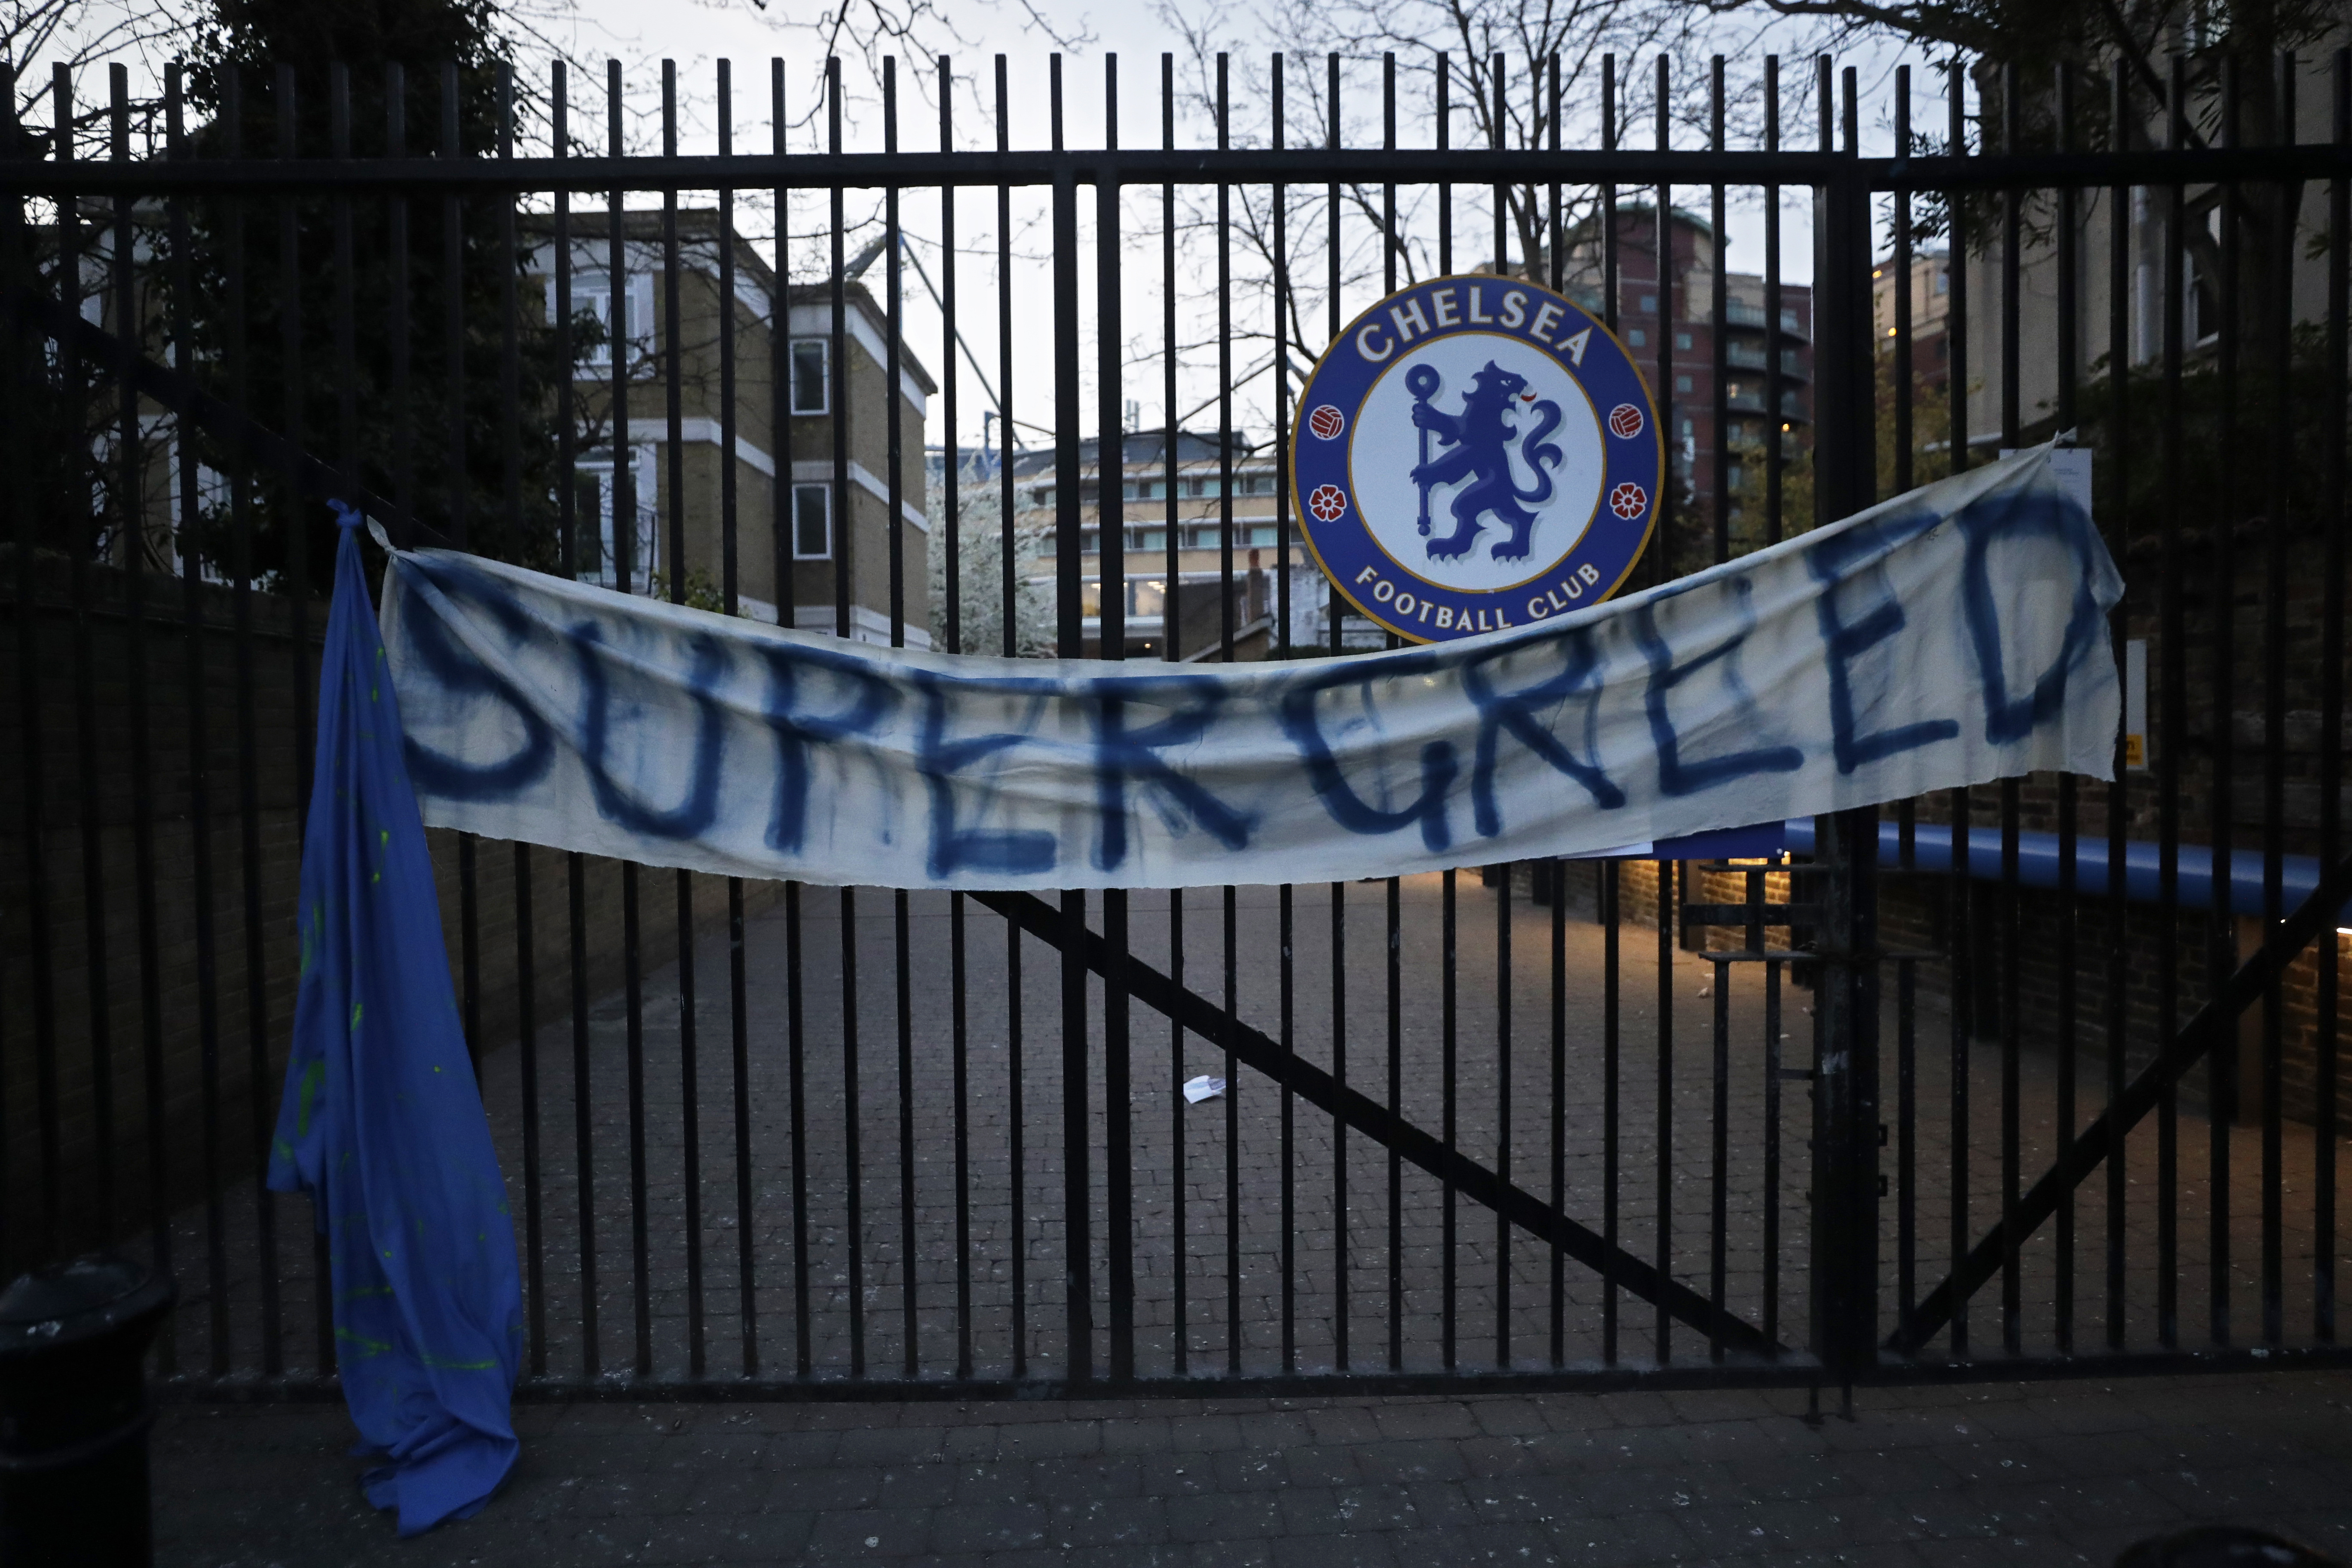 切尔西球迷对于‘蓝狮’加入欧超联赛表现最反感，有球迷将写上‘超级贪婪’字眼的横幅挂在球会的入口处。（美联社照片）

